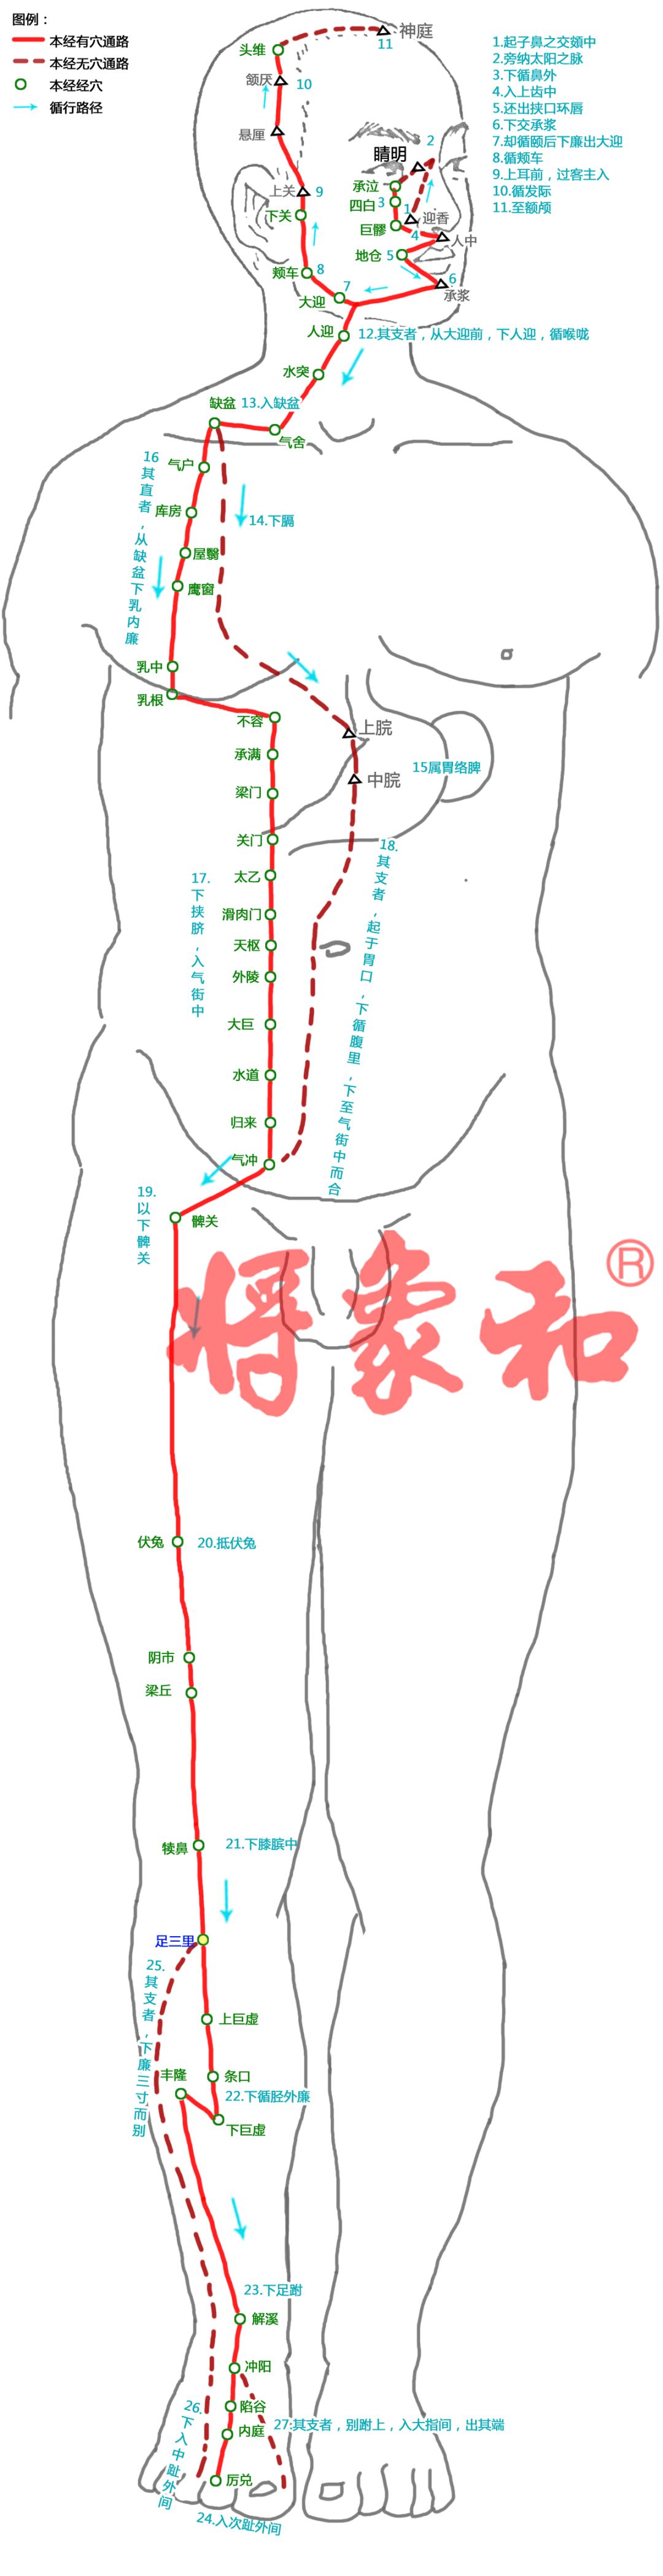 足阳明胃经的循行图图片